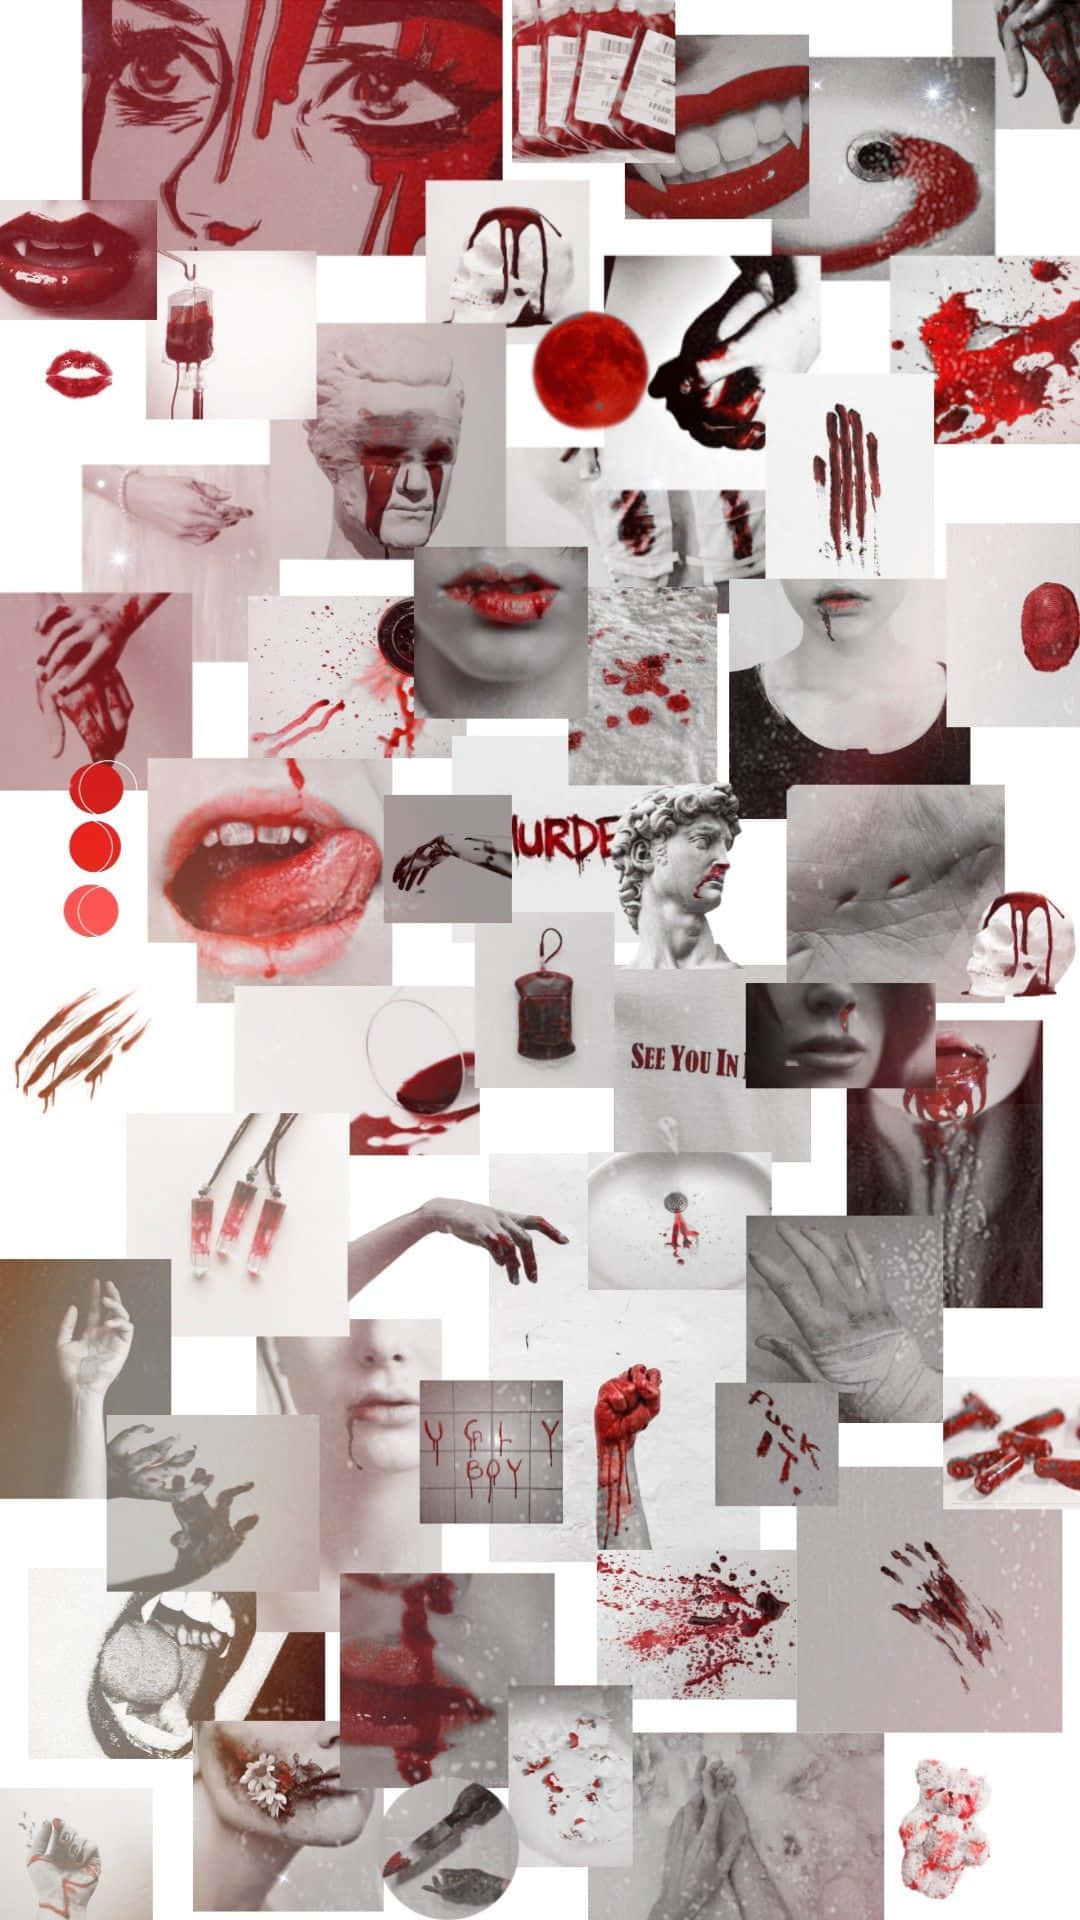 Einecollage Aus Blutigen Bildern Und Motiven Wallpaper